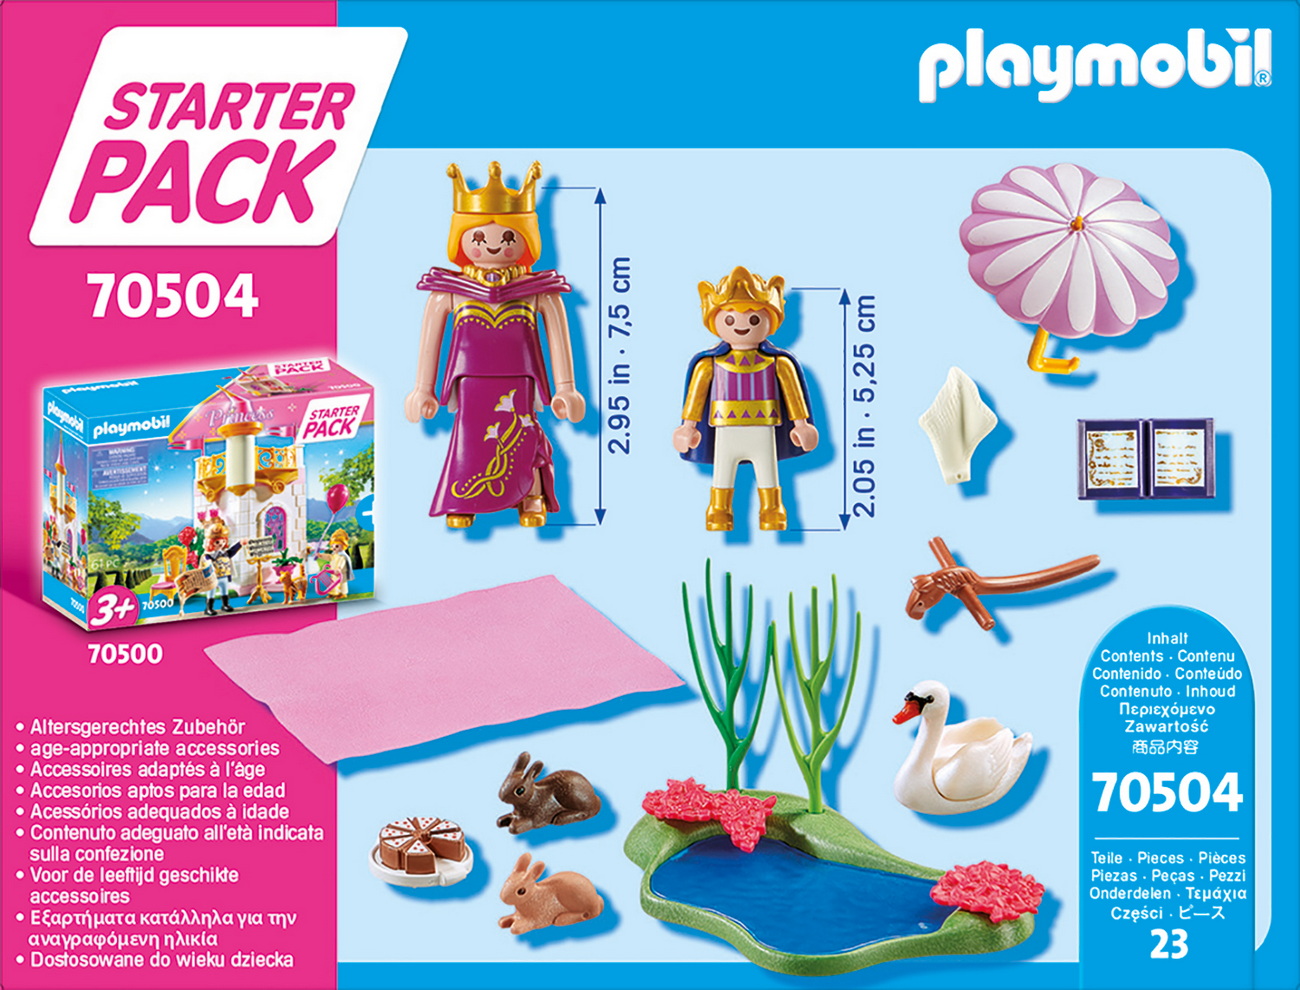 Playmobil 70504 - Starter Pack Prinzessin Ergänzungsset (Princess)